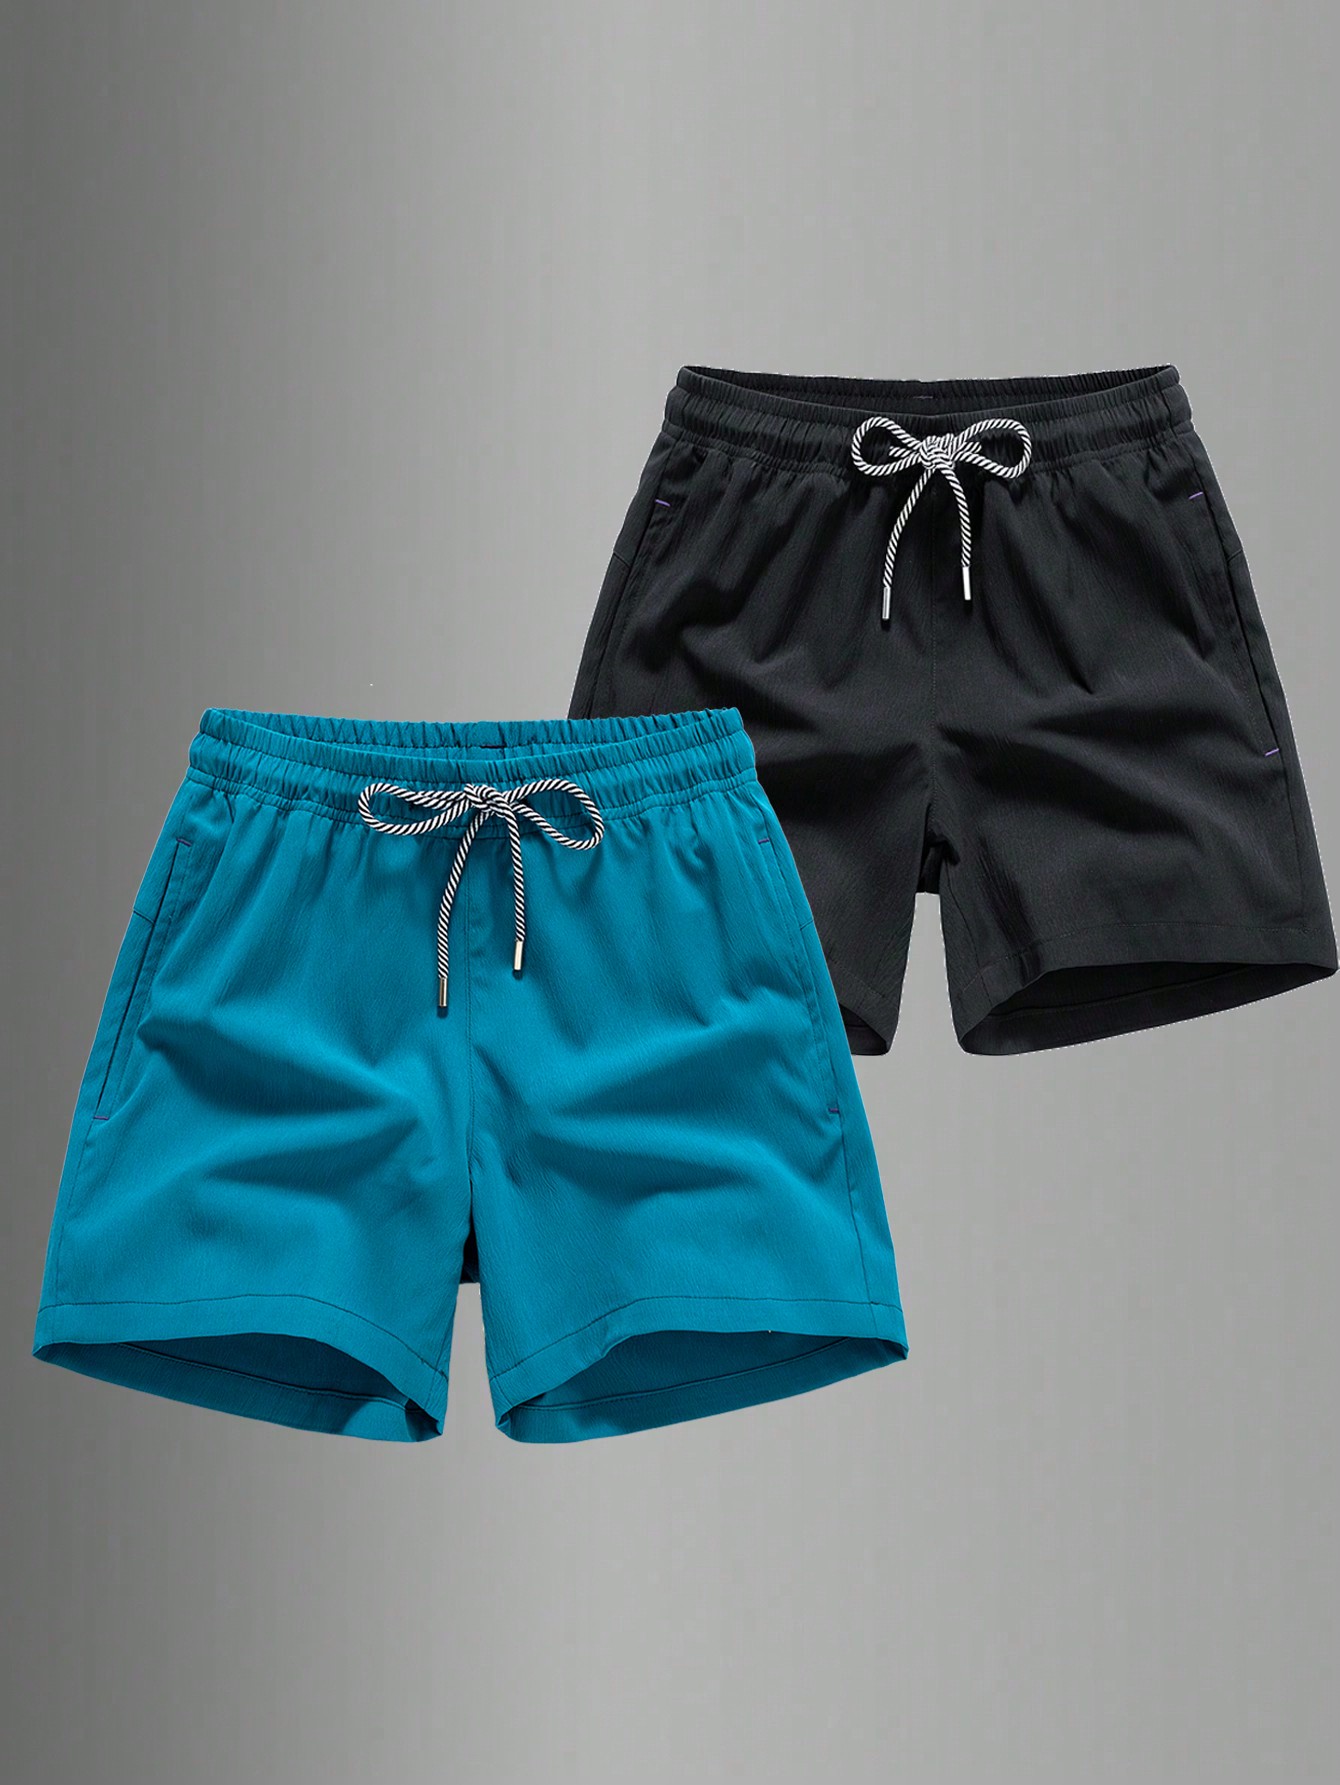 Мужские быстросохнущие спортивные шорты с завязками на талии для пляжного отдыха или тренировок, голубые